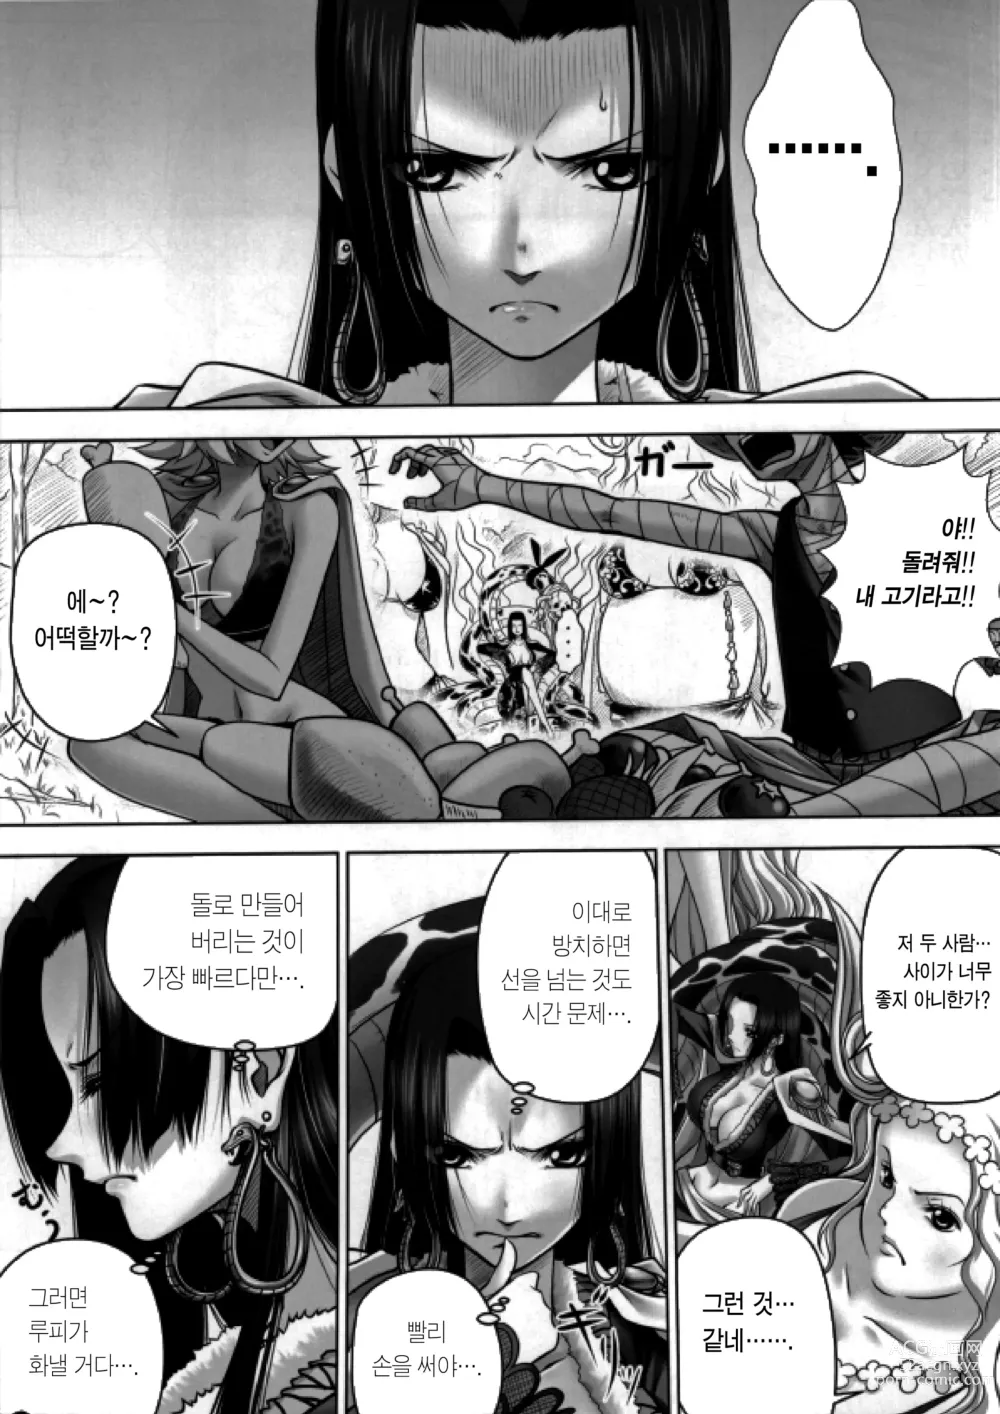 Page 2 of doujinshi 뱀공주님과 부정한 애인